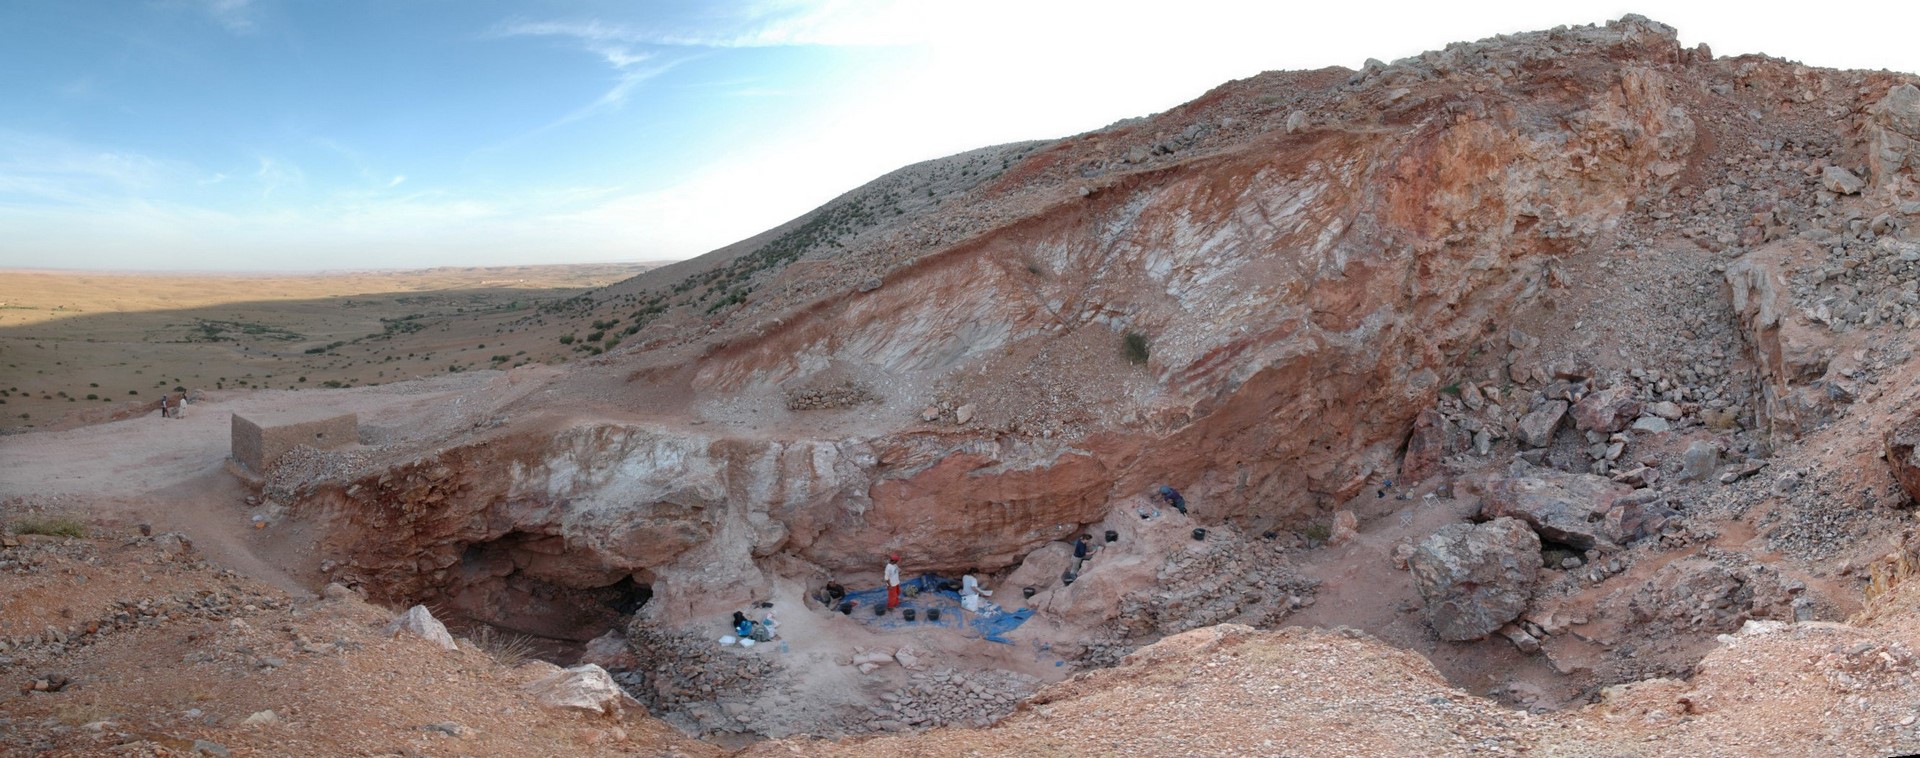 Hallan en Marruecos los restos del homo sapiens más antiguo del mundo